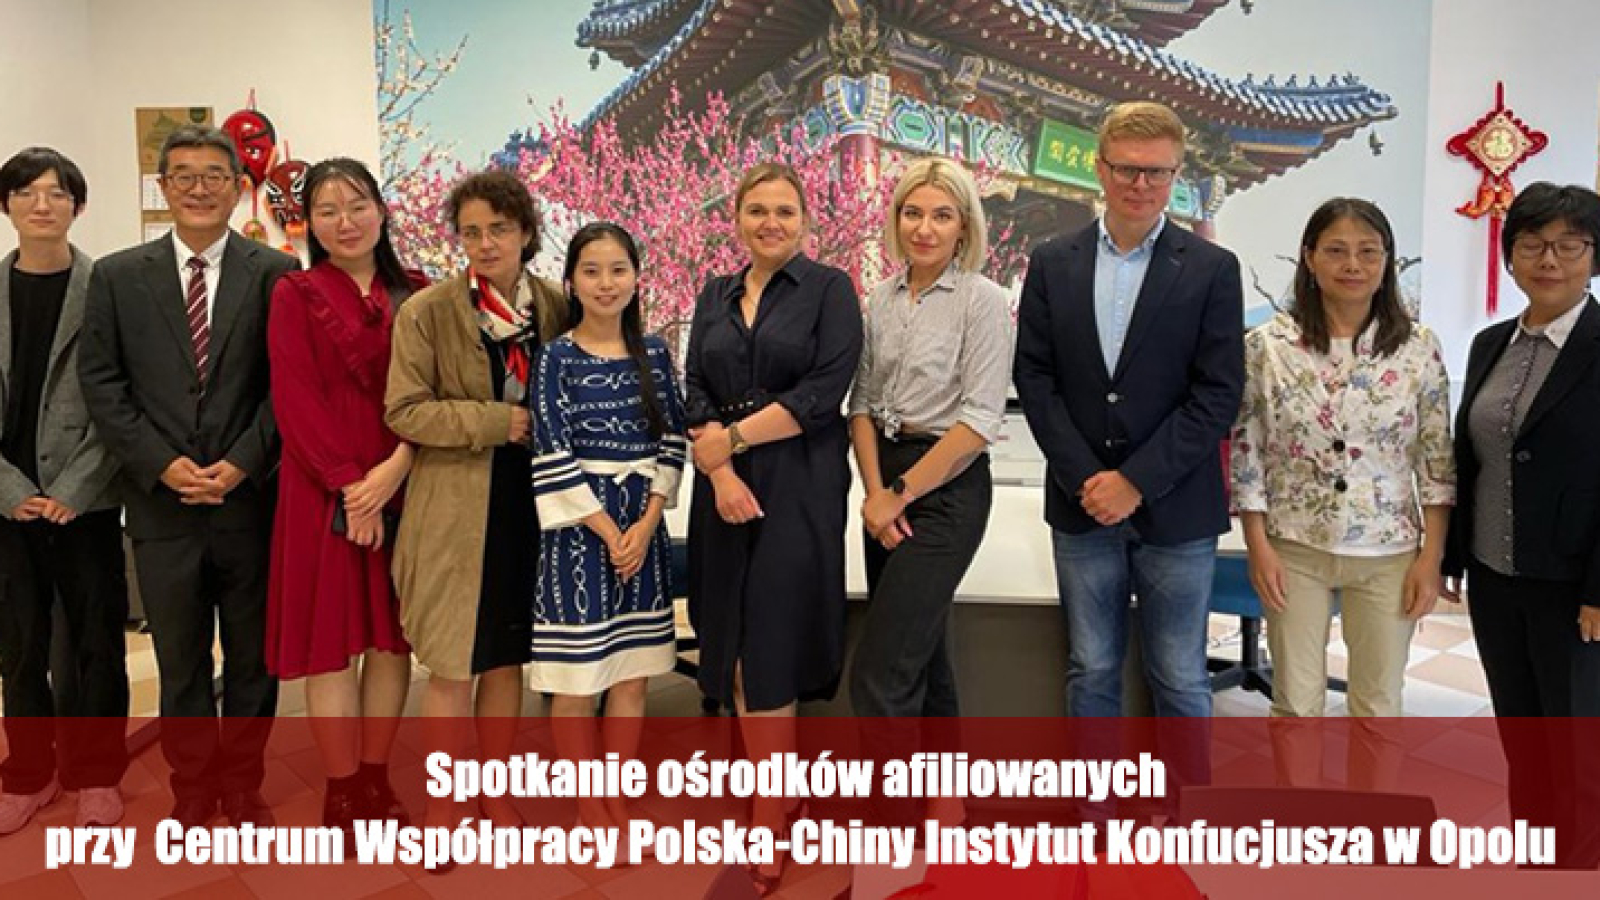 spotkanie ośrodków afiliowanych przy Centrum Współpracy Polska-Chiny Instytut Konfucjusza w Opolu